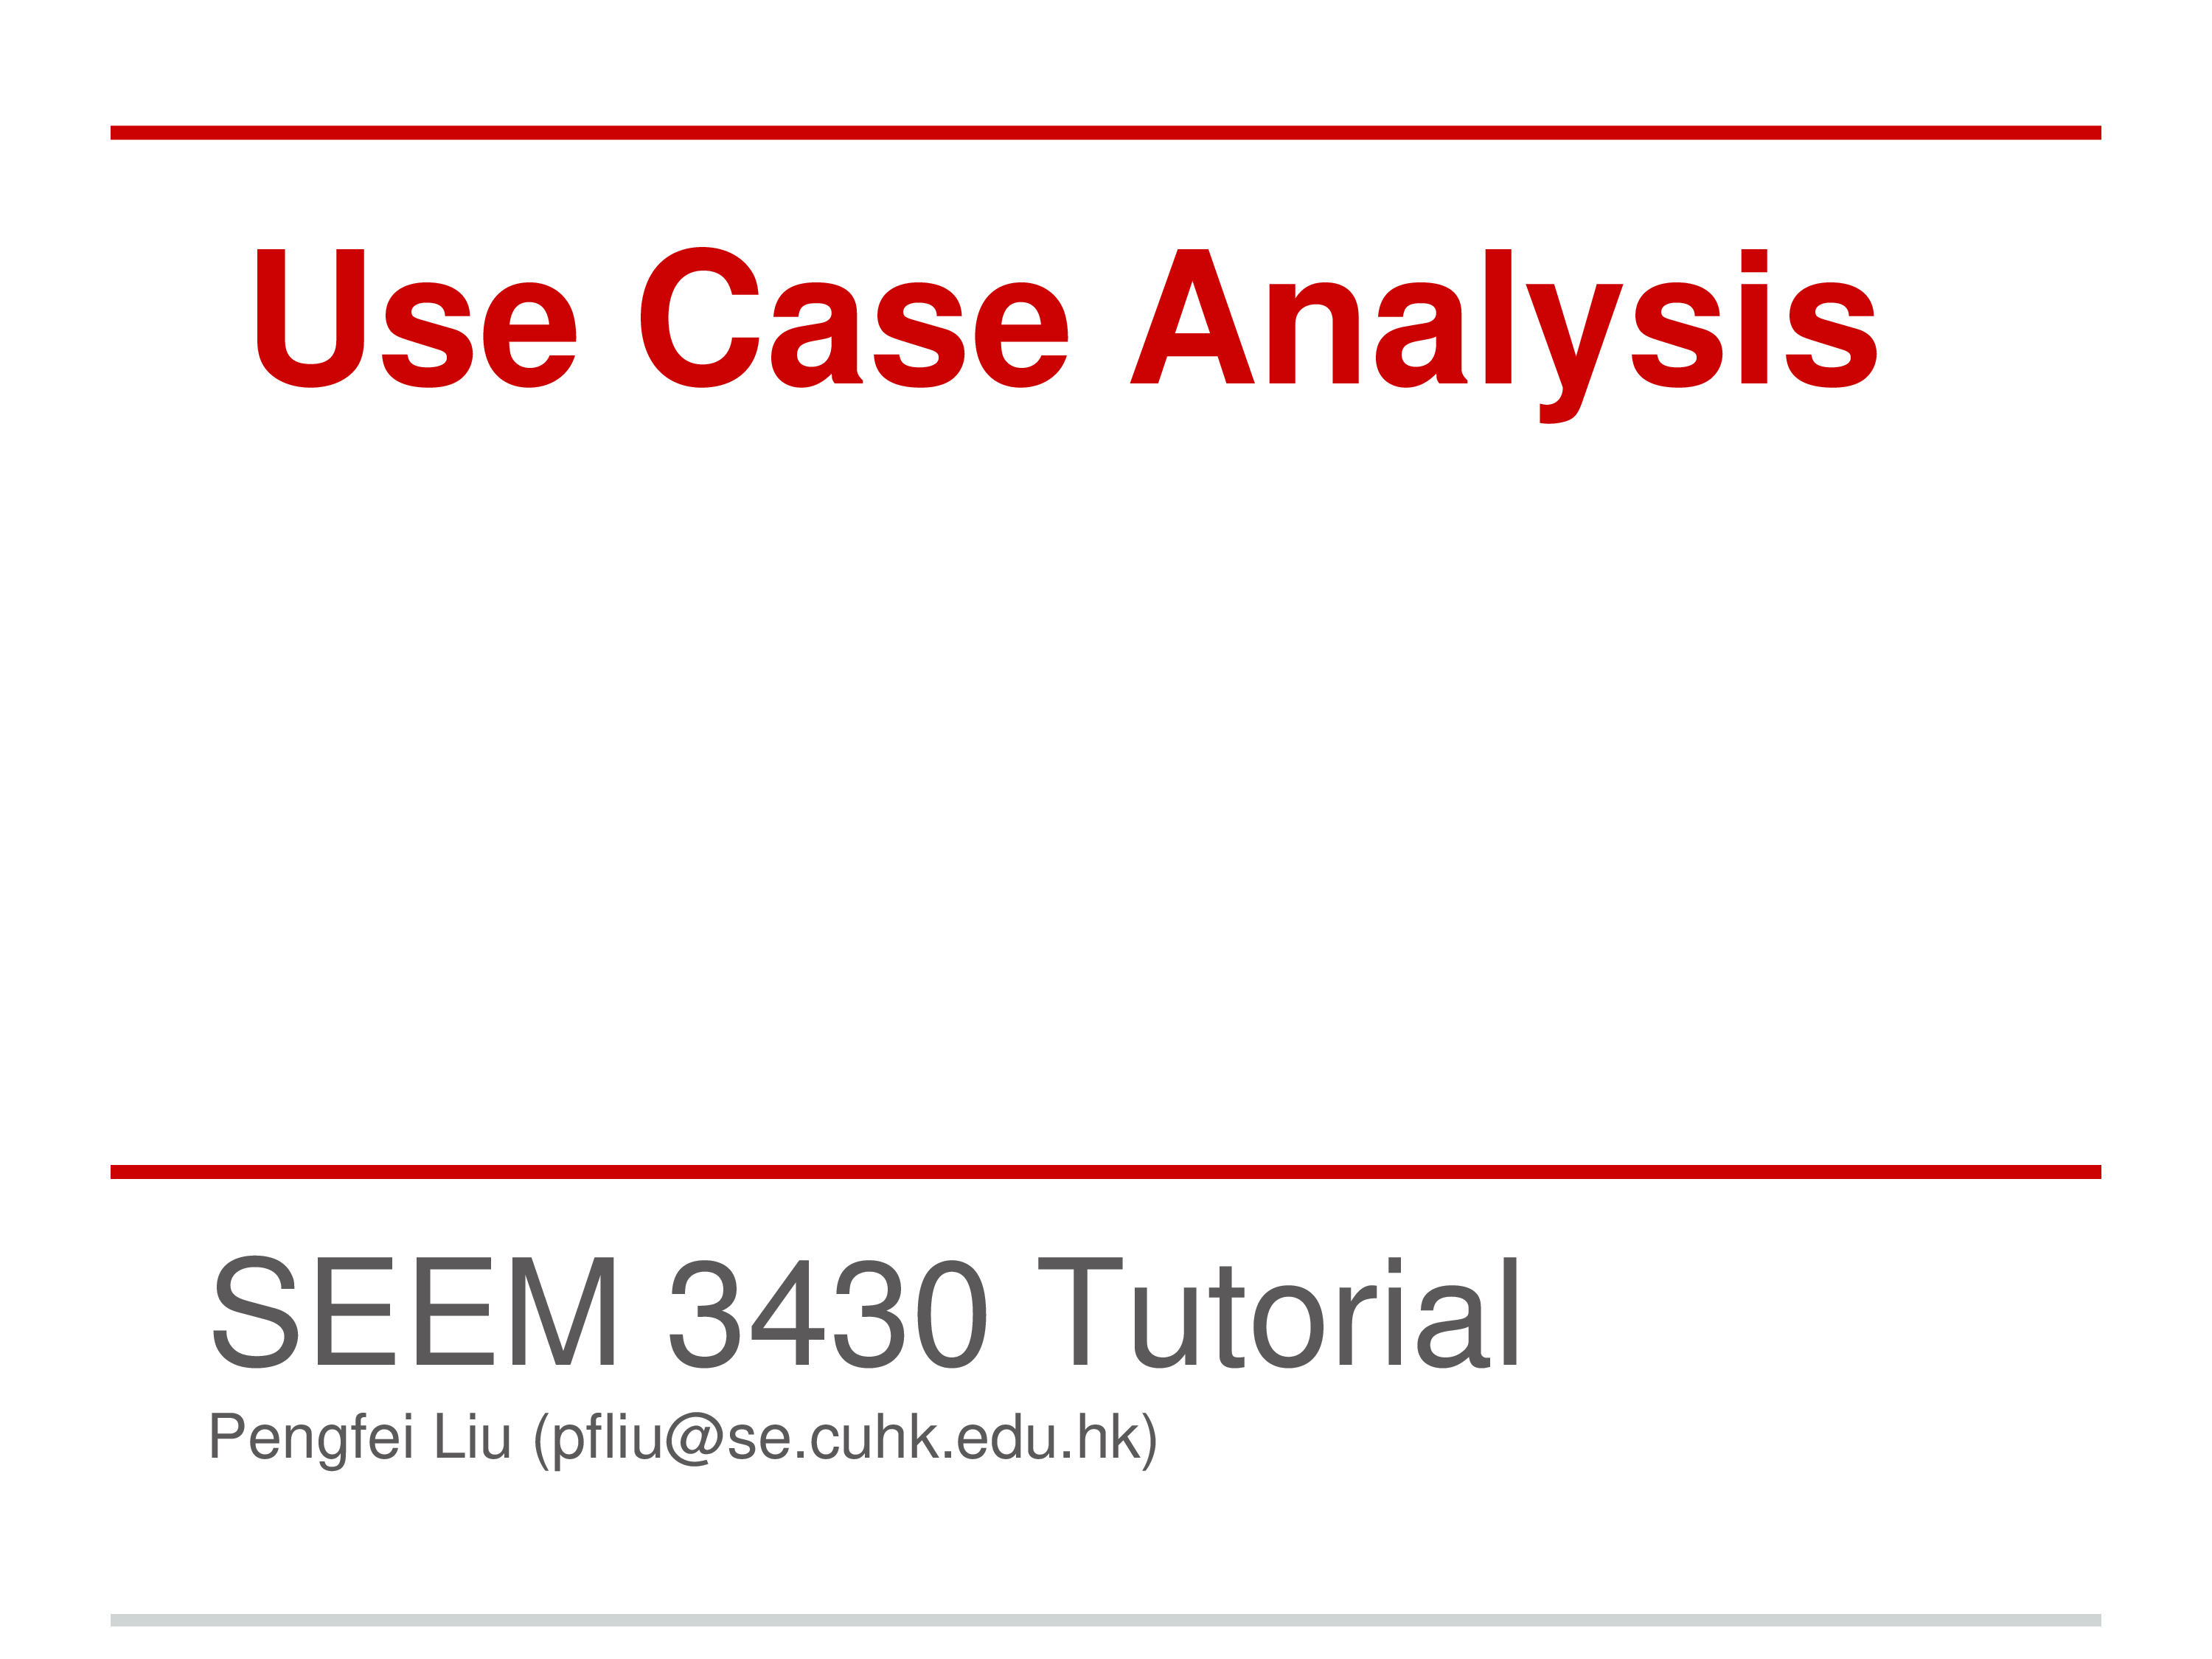 Use Case Analysis main image